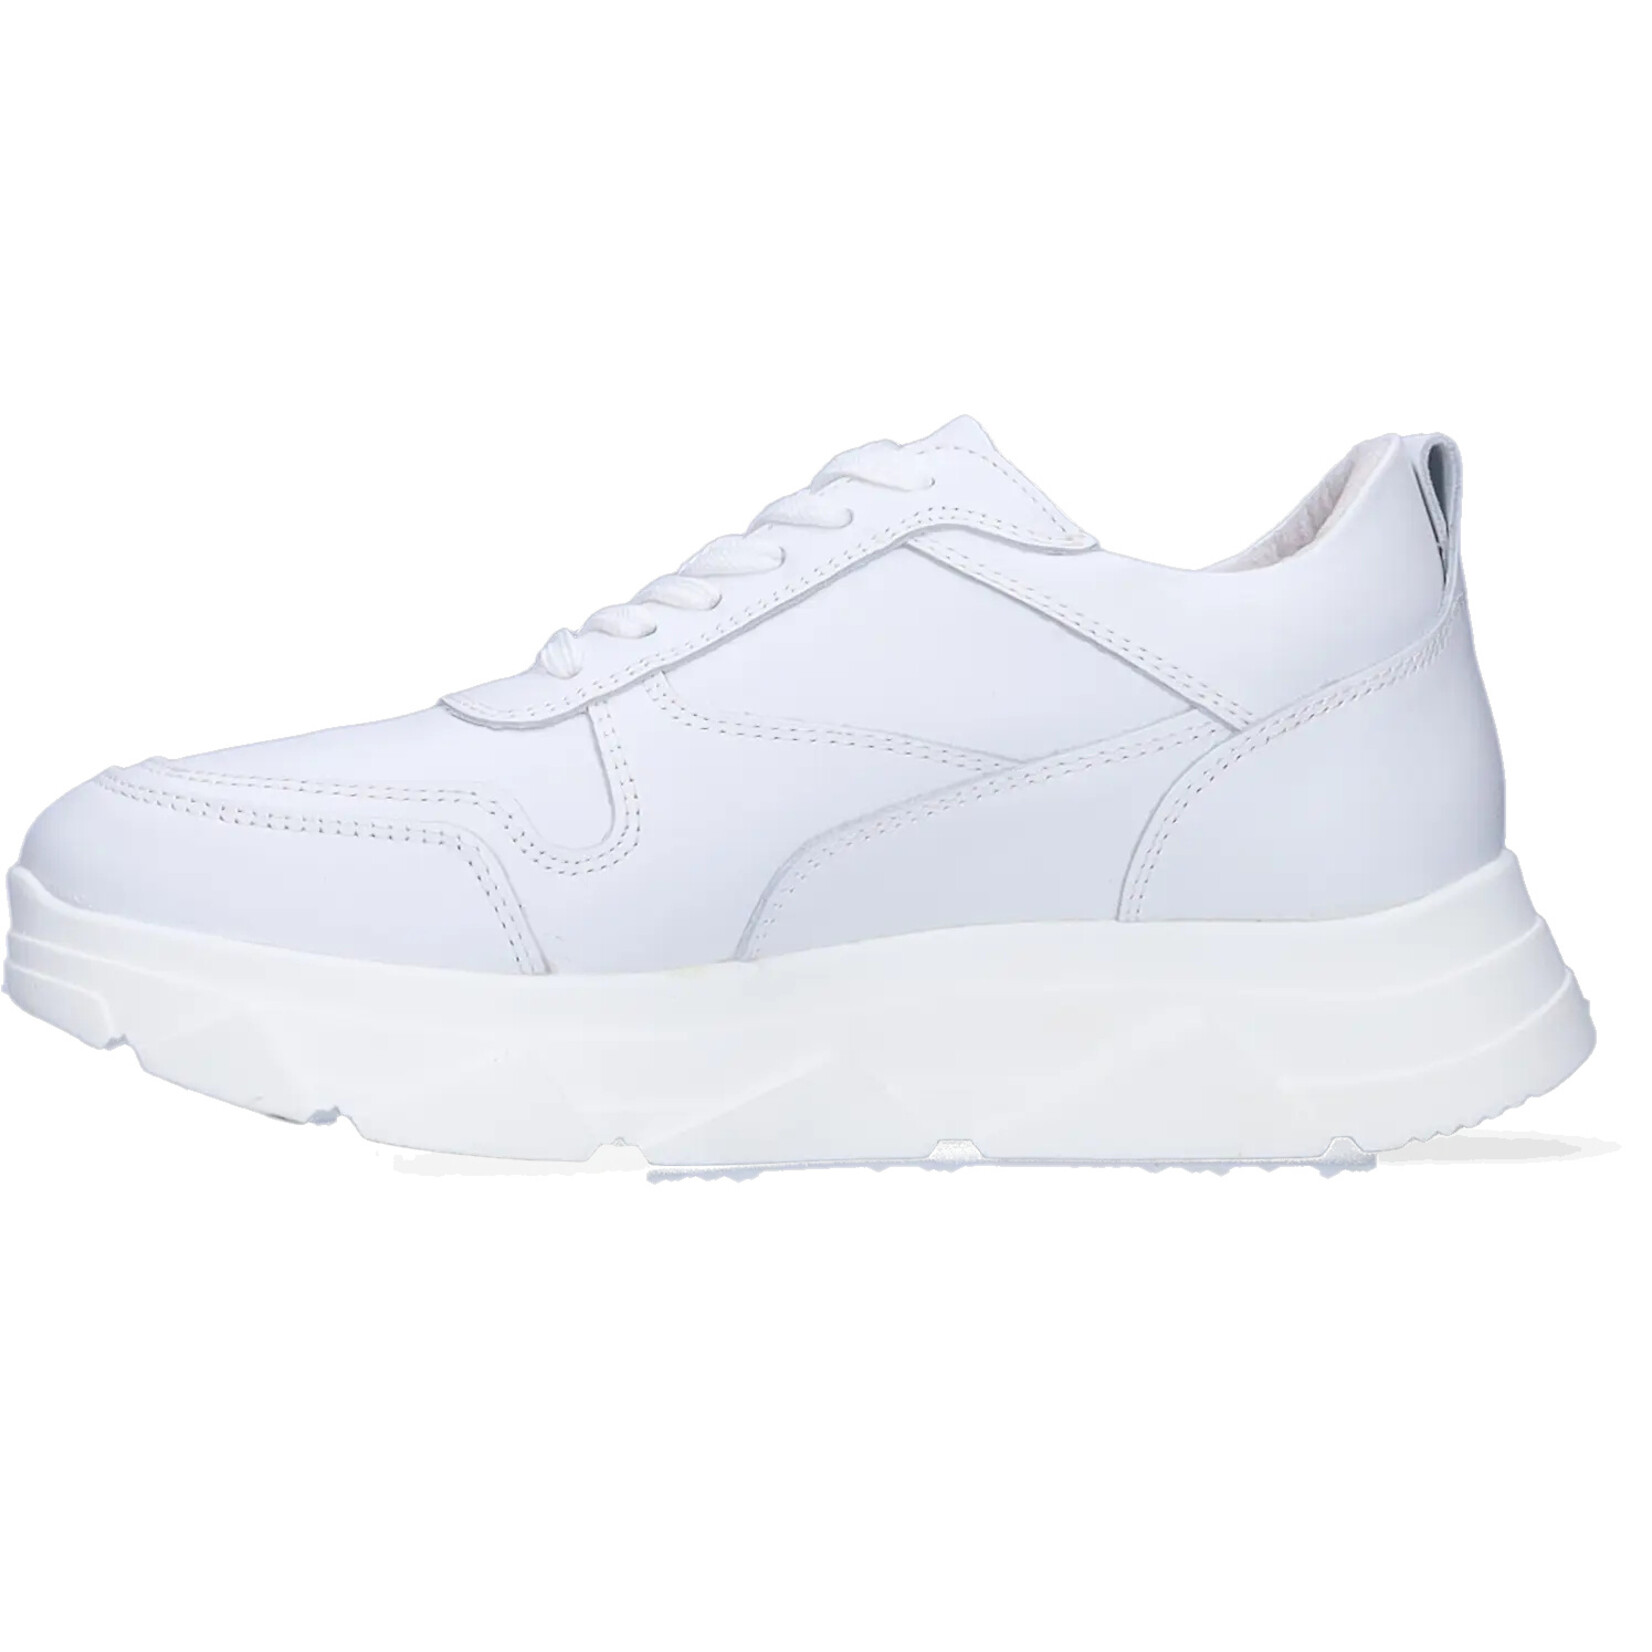 JJ Footwear Tirana - White